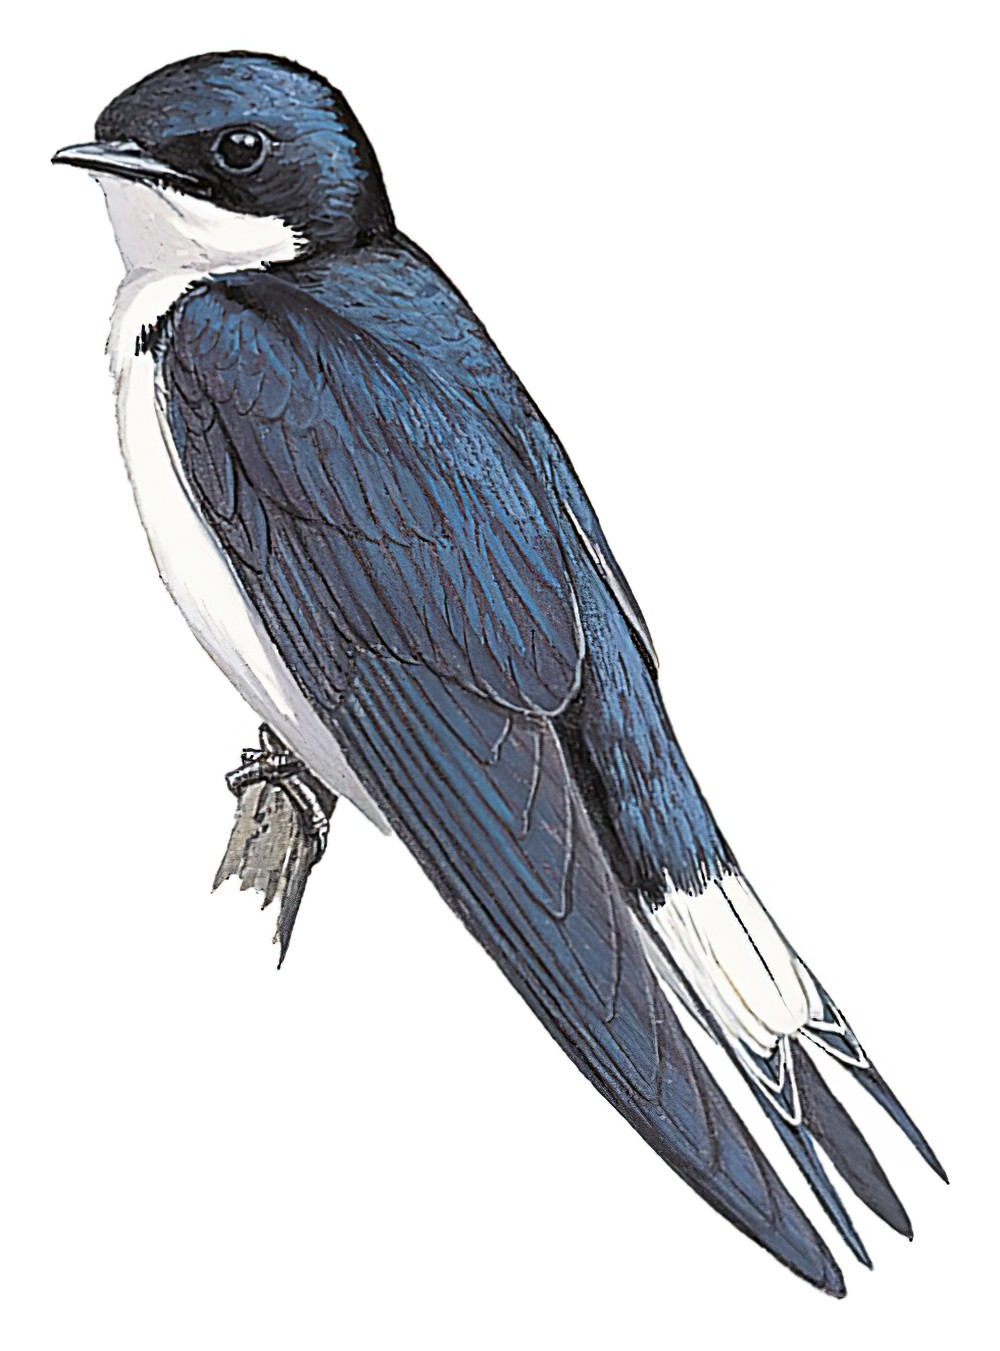 White-tailed Swallow / Hirundo megaensis